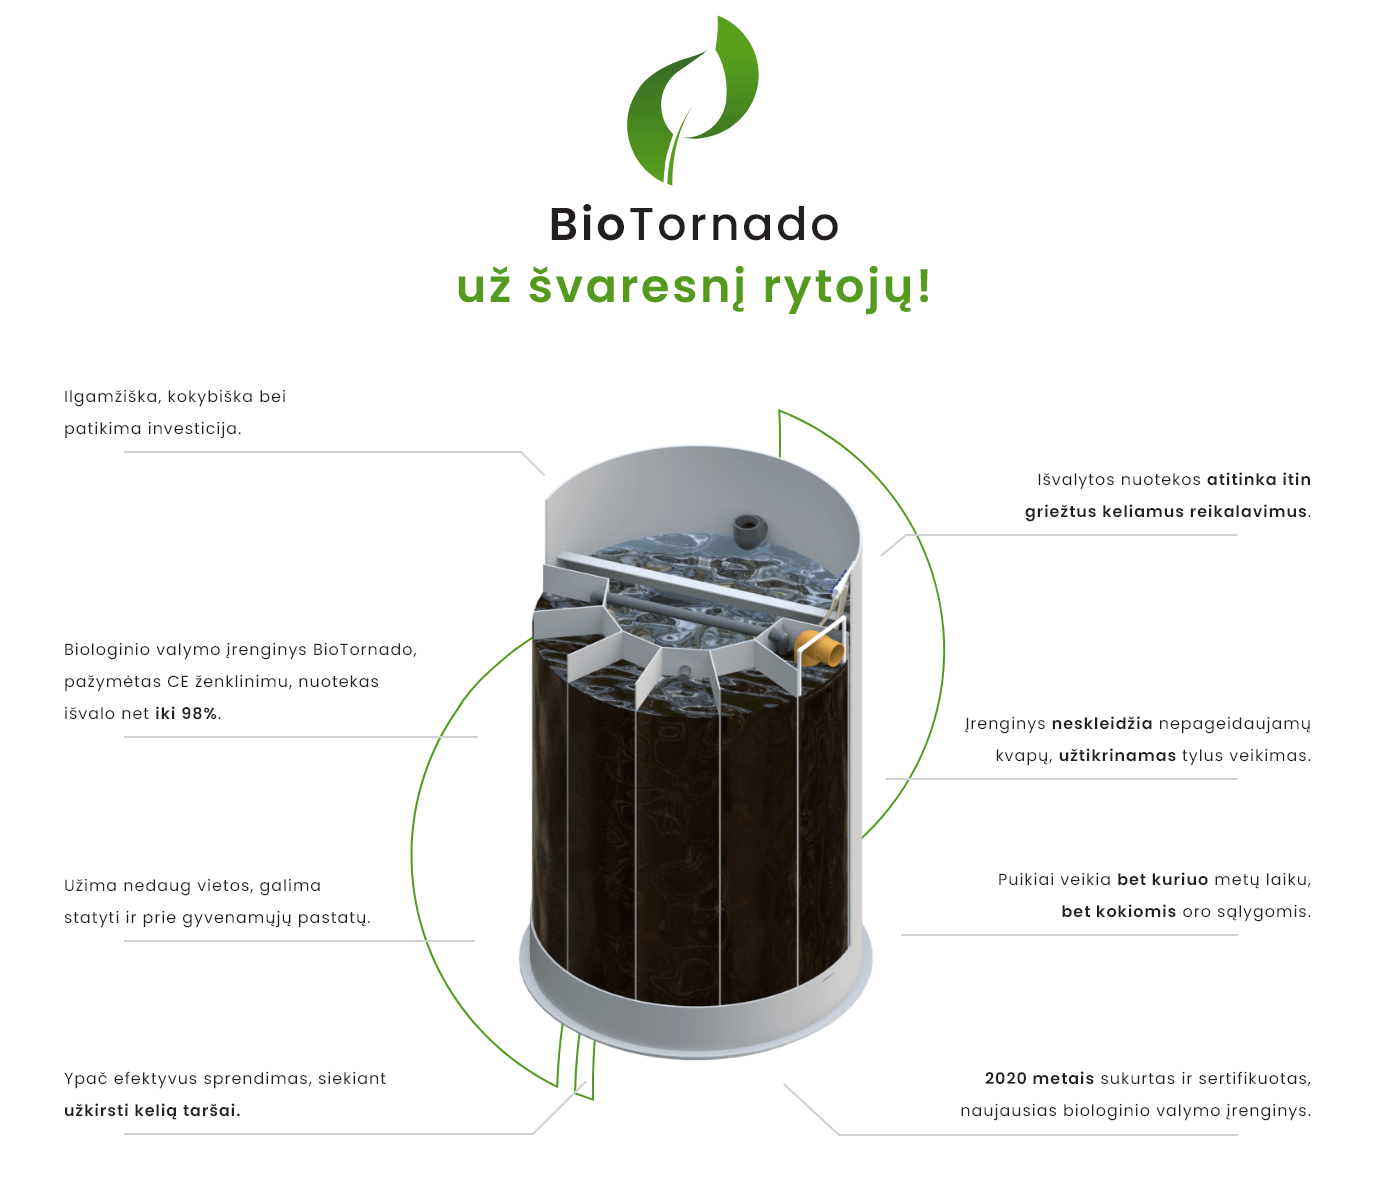 BioTornado biologinis nuotekų valymo įrenginys